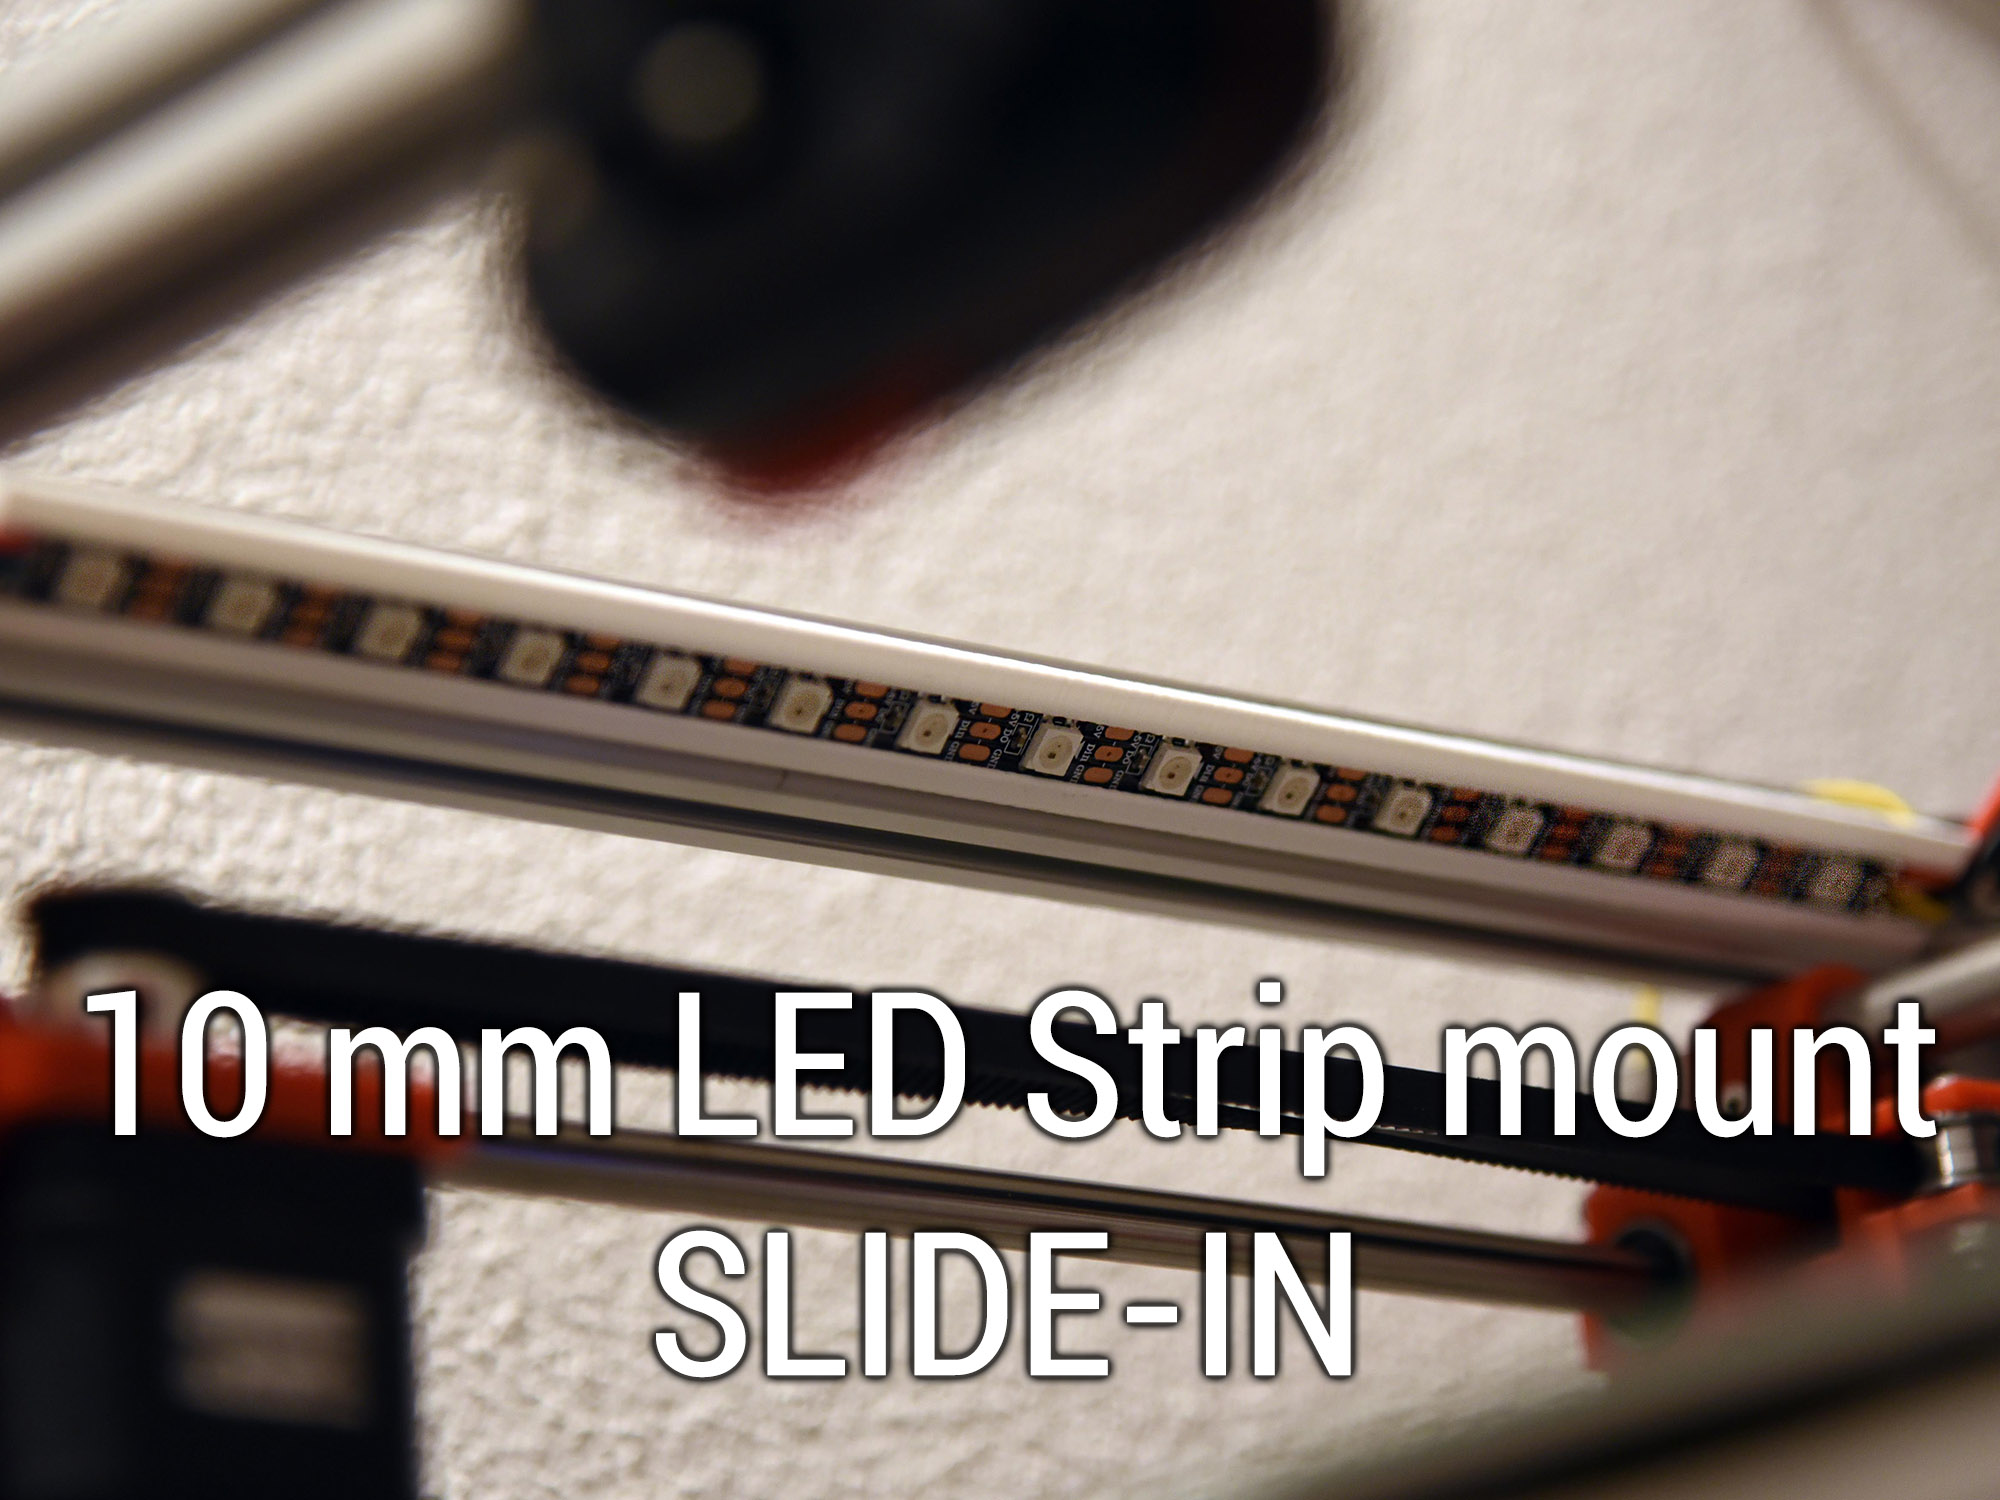 10 mm Slide-IN LED Strip mount for 2020